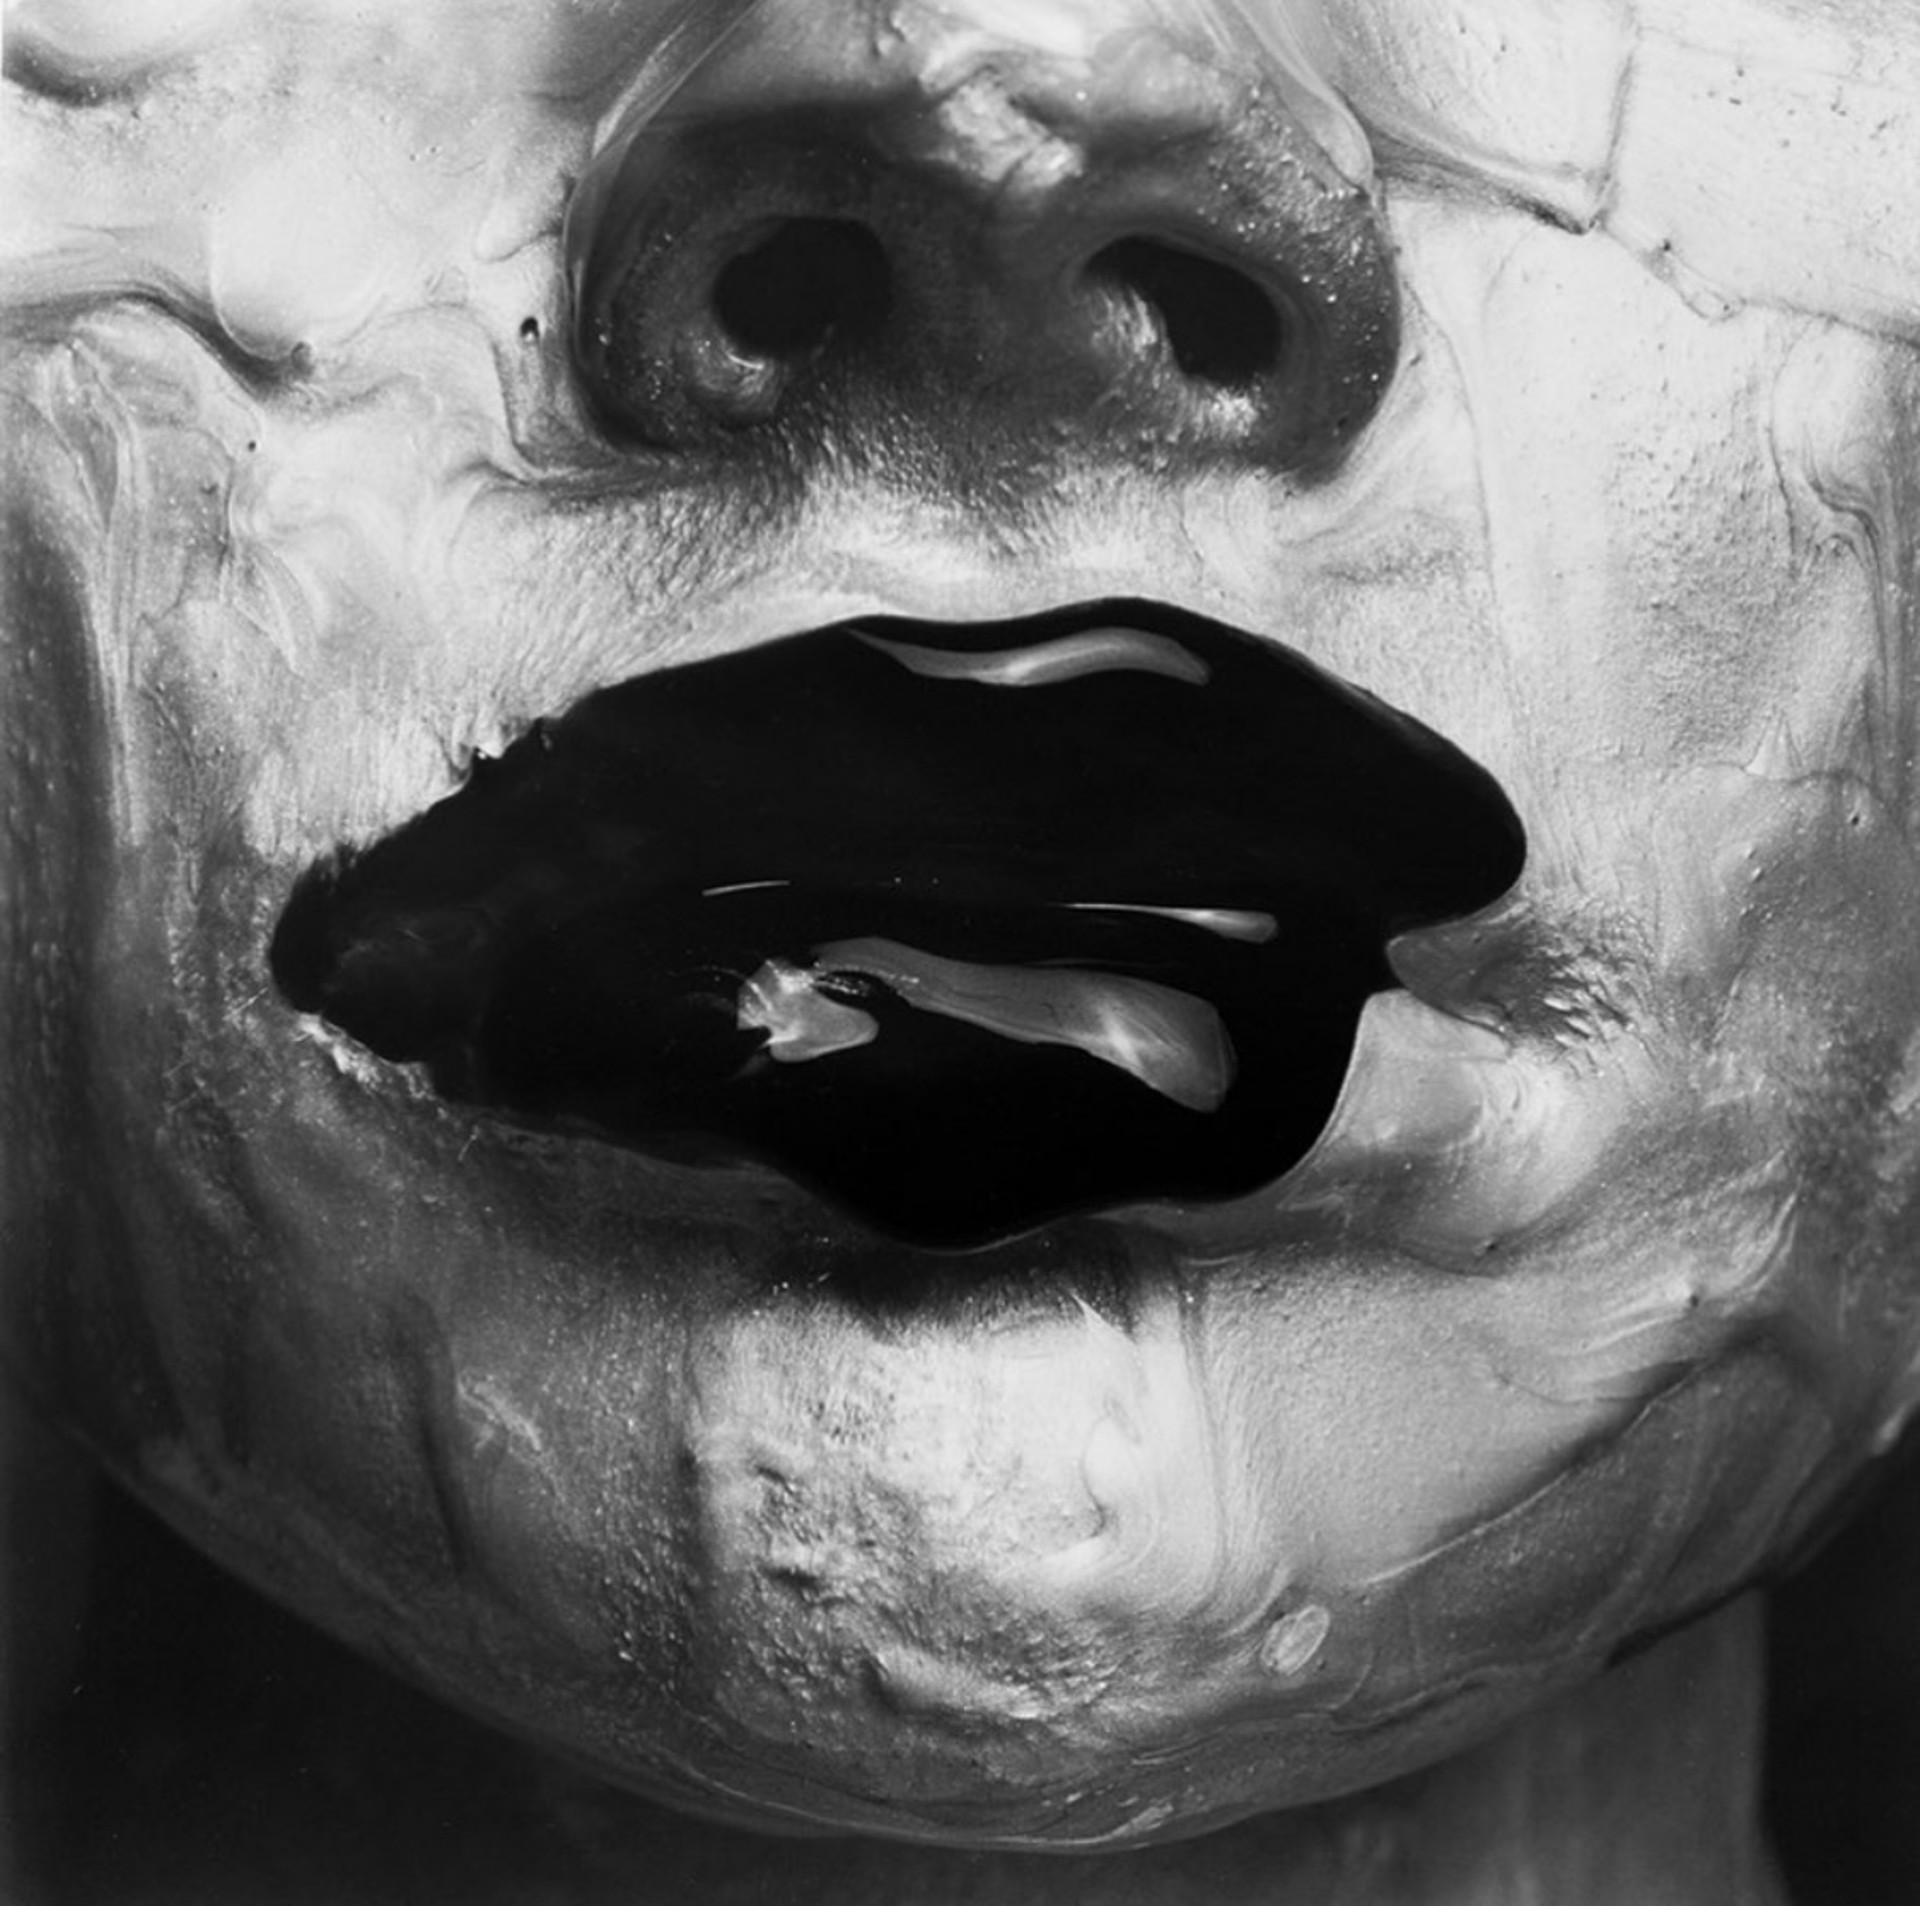 Monochrome Lips by Tyler Shields